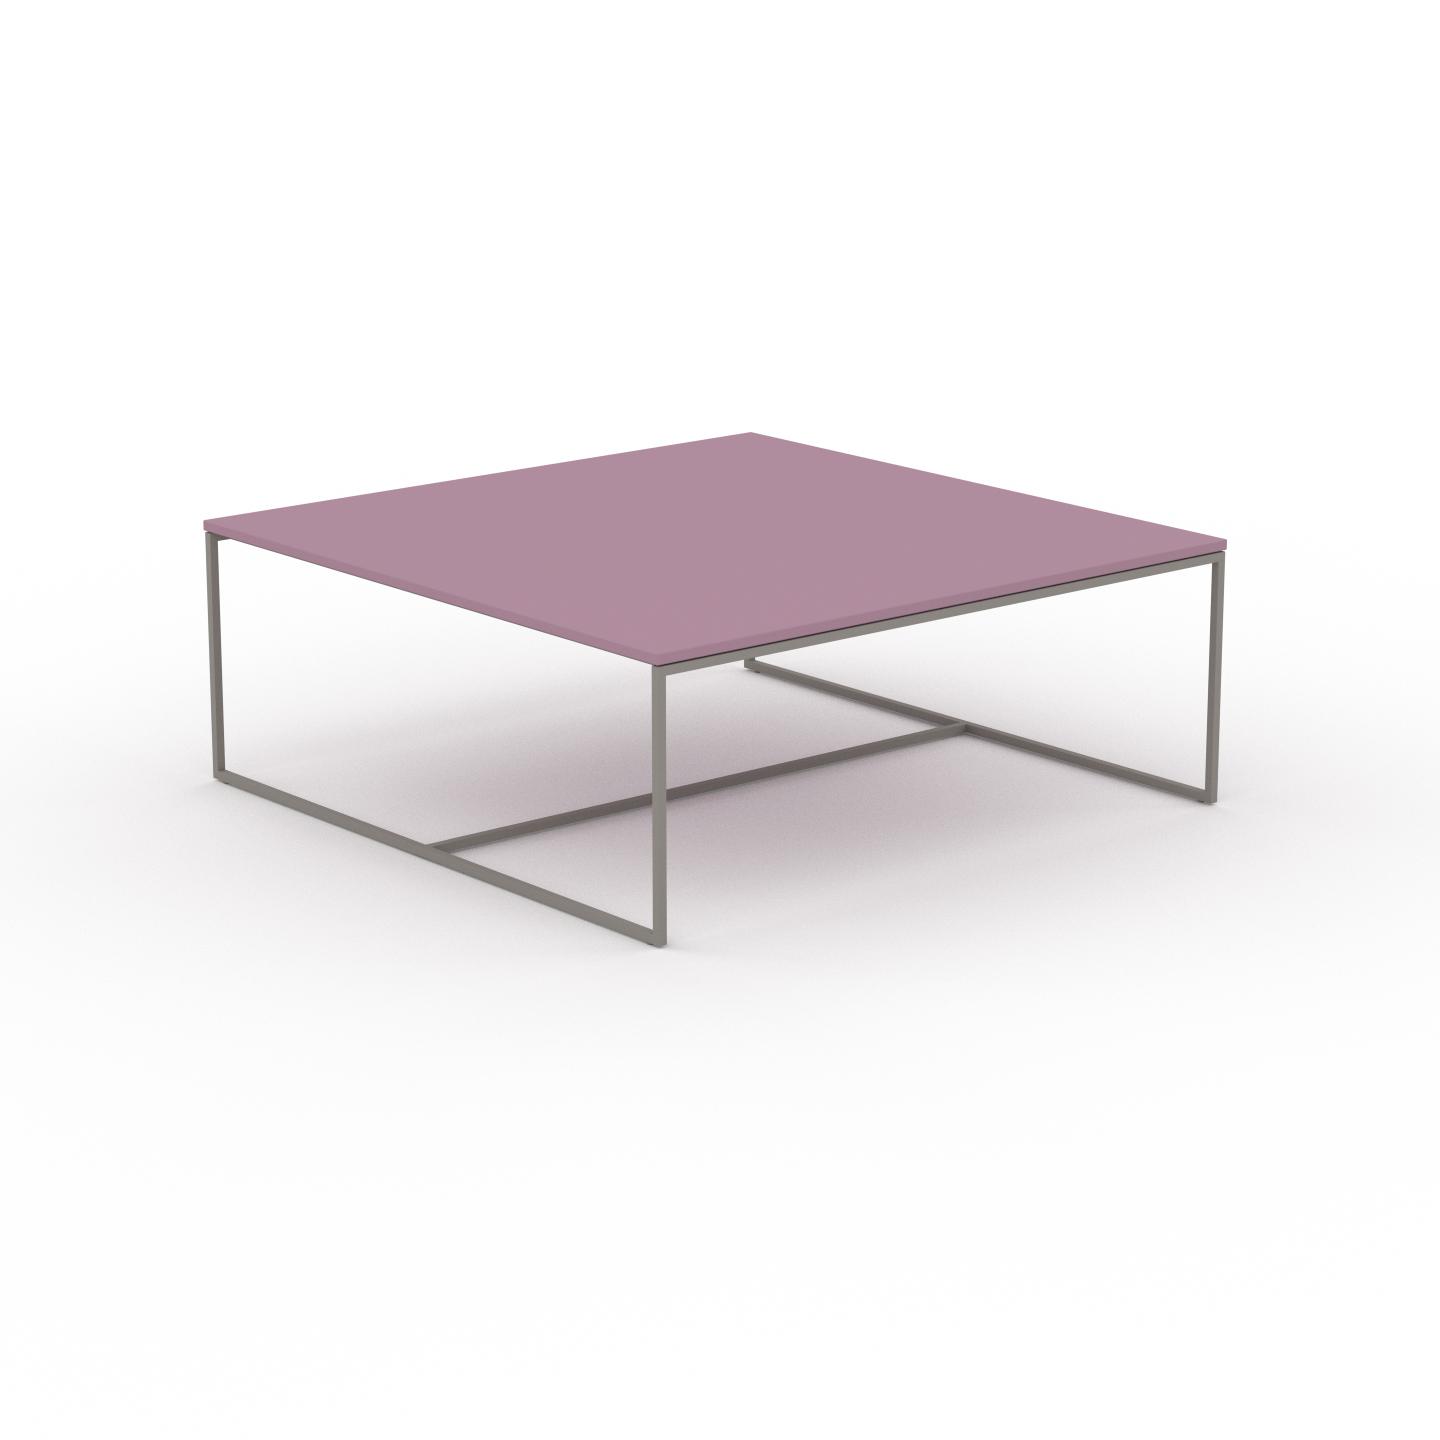 MYCS Beistelltisch Terrakotta - Eleganter Nachttisch: Hochwertige Materialien, einzigartiges Design - 121 x 46 x 121 cm, Komplett anpassbar